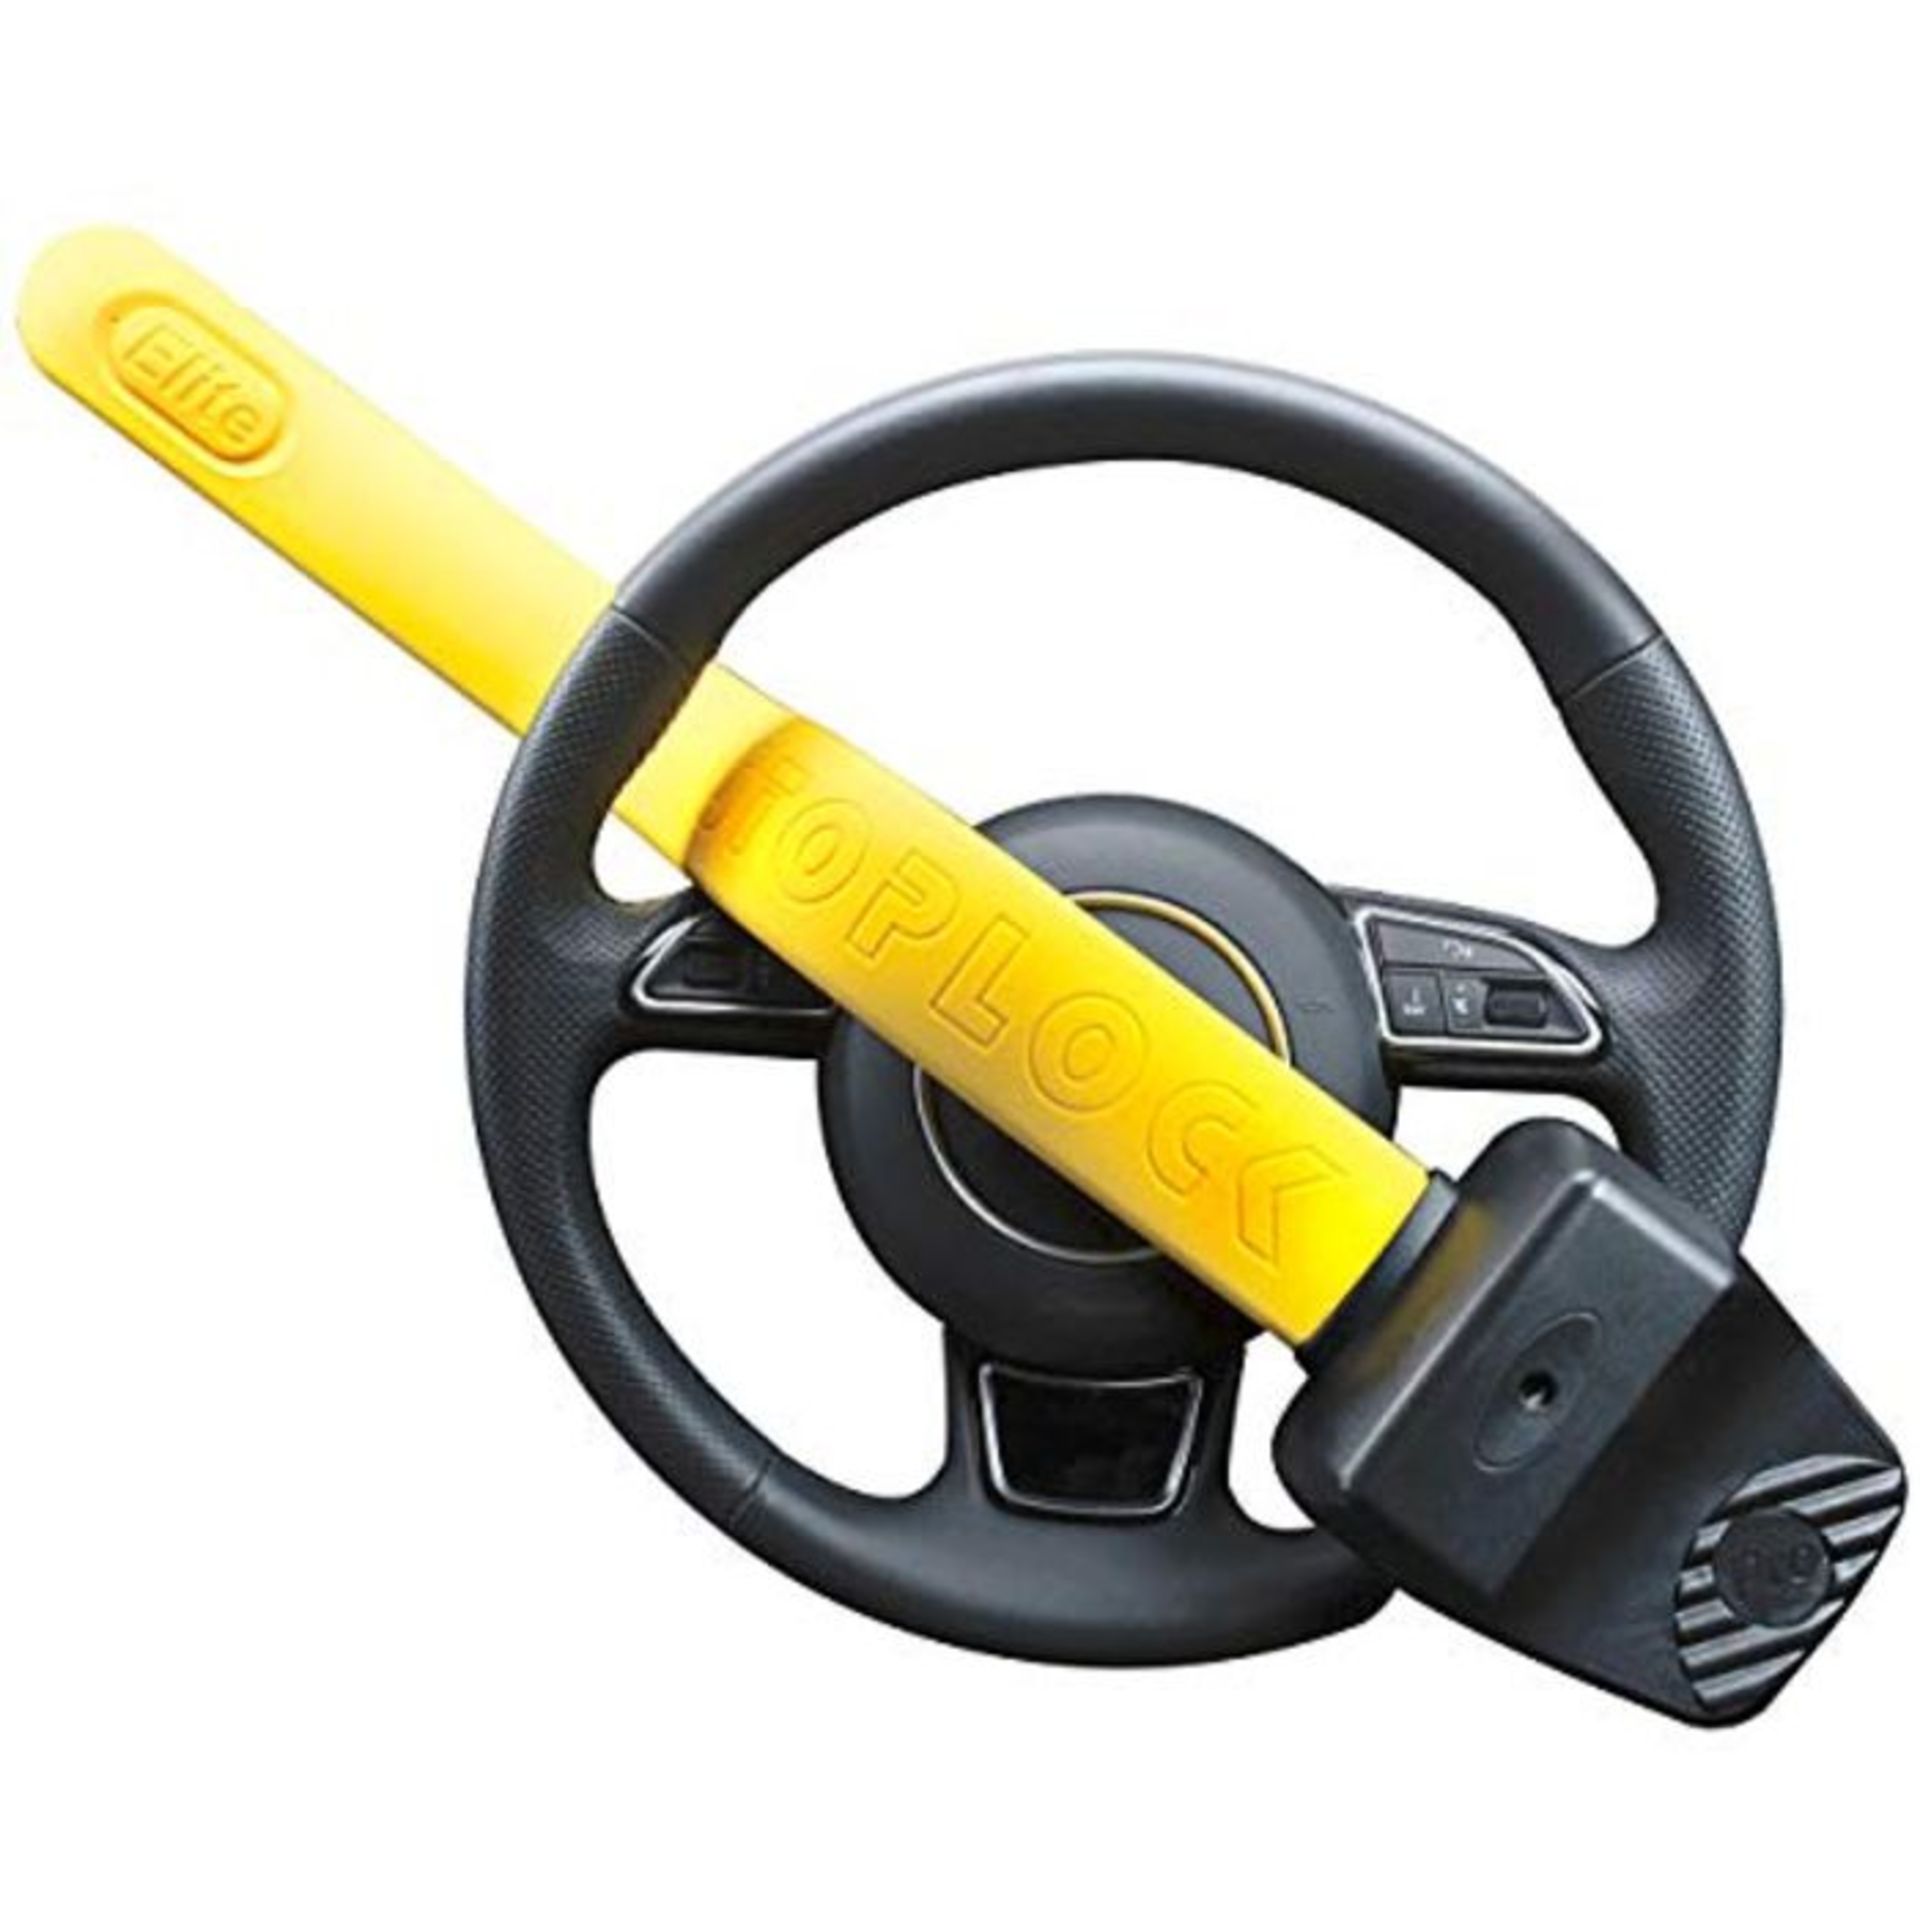 Stoplock HG 150-00 Pro Elite Car Steering Wheel Lock - Safe Secure Heavy Duty Anti-The